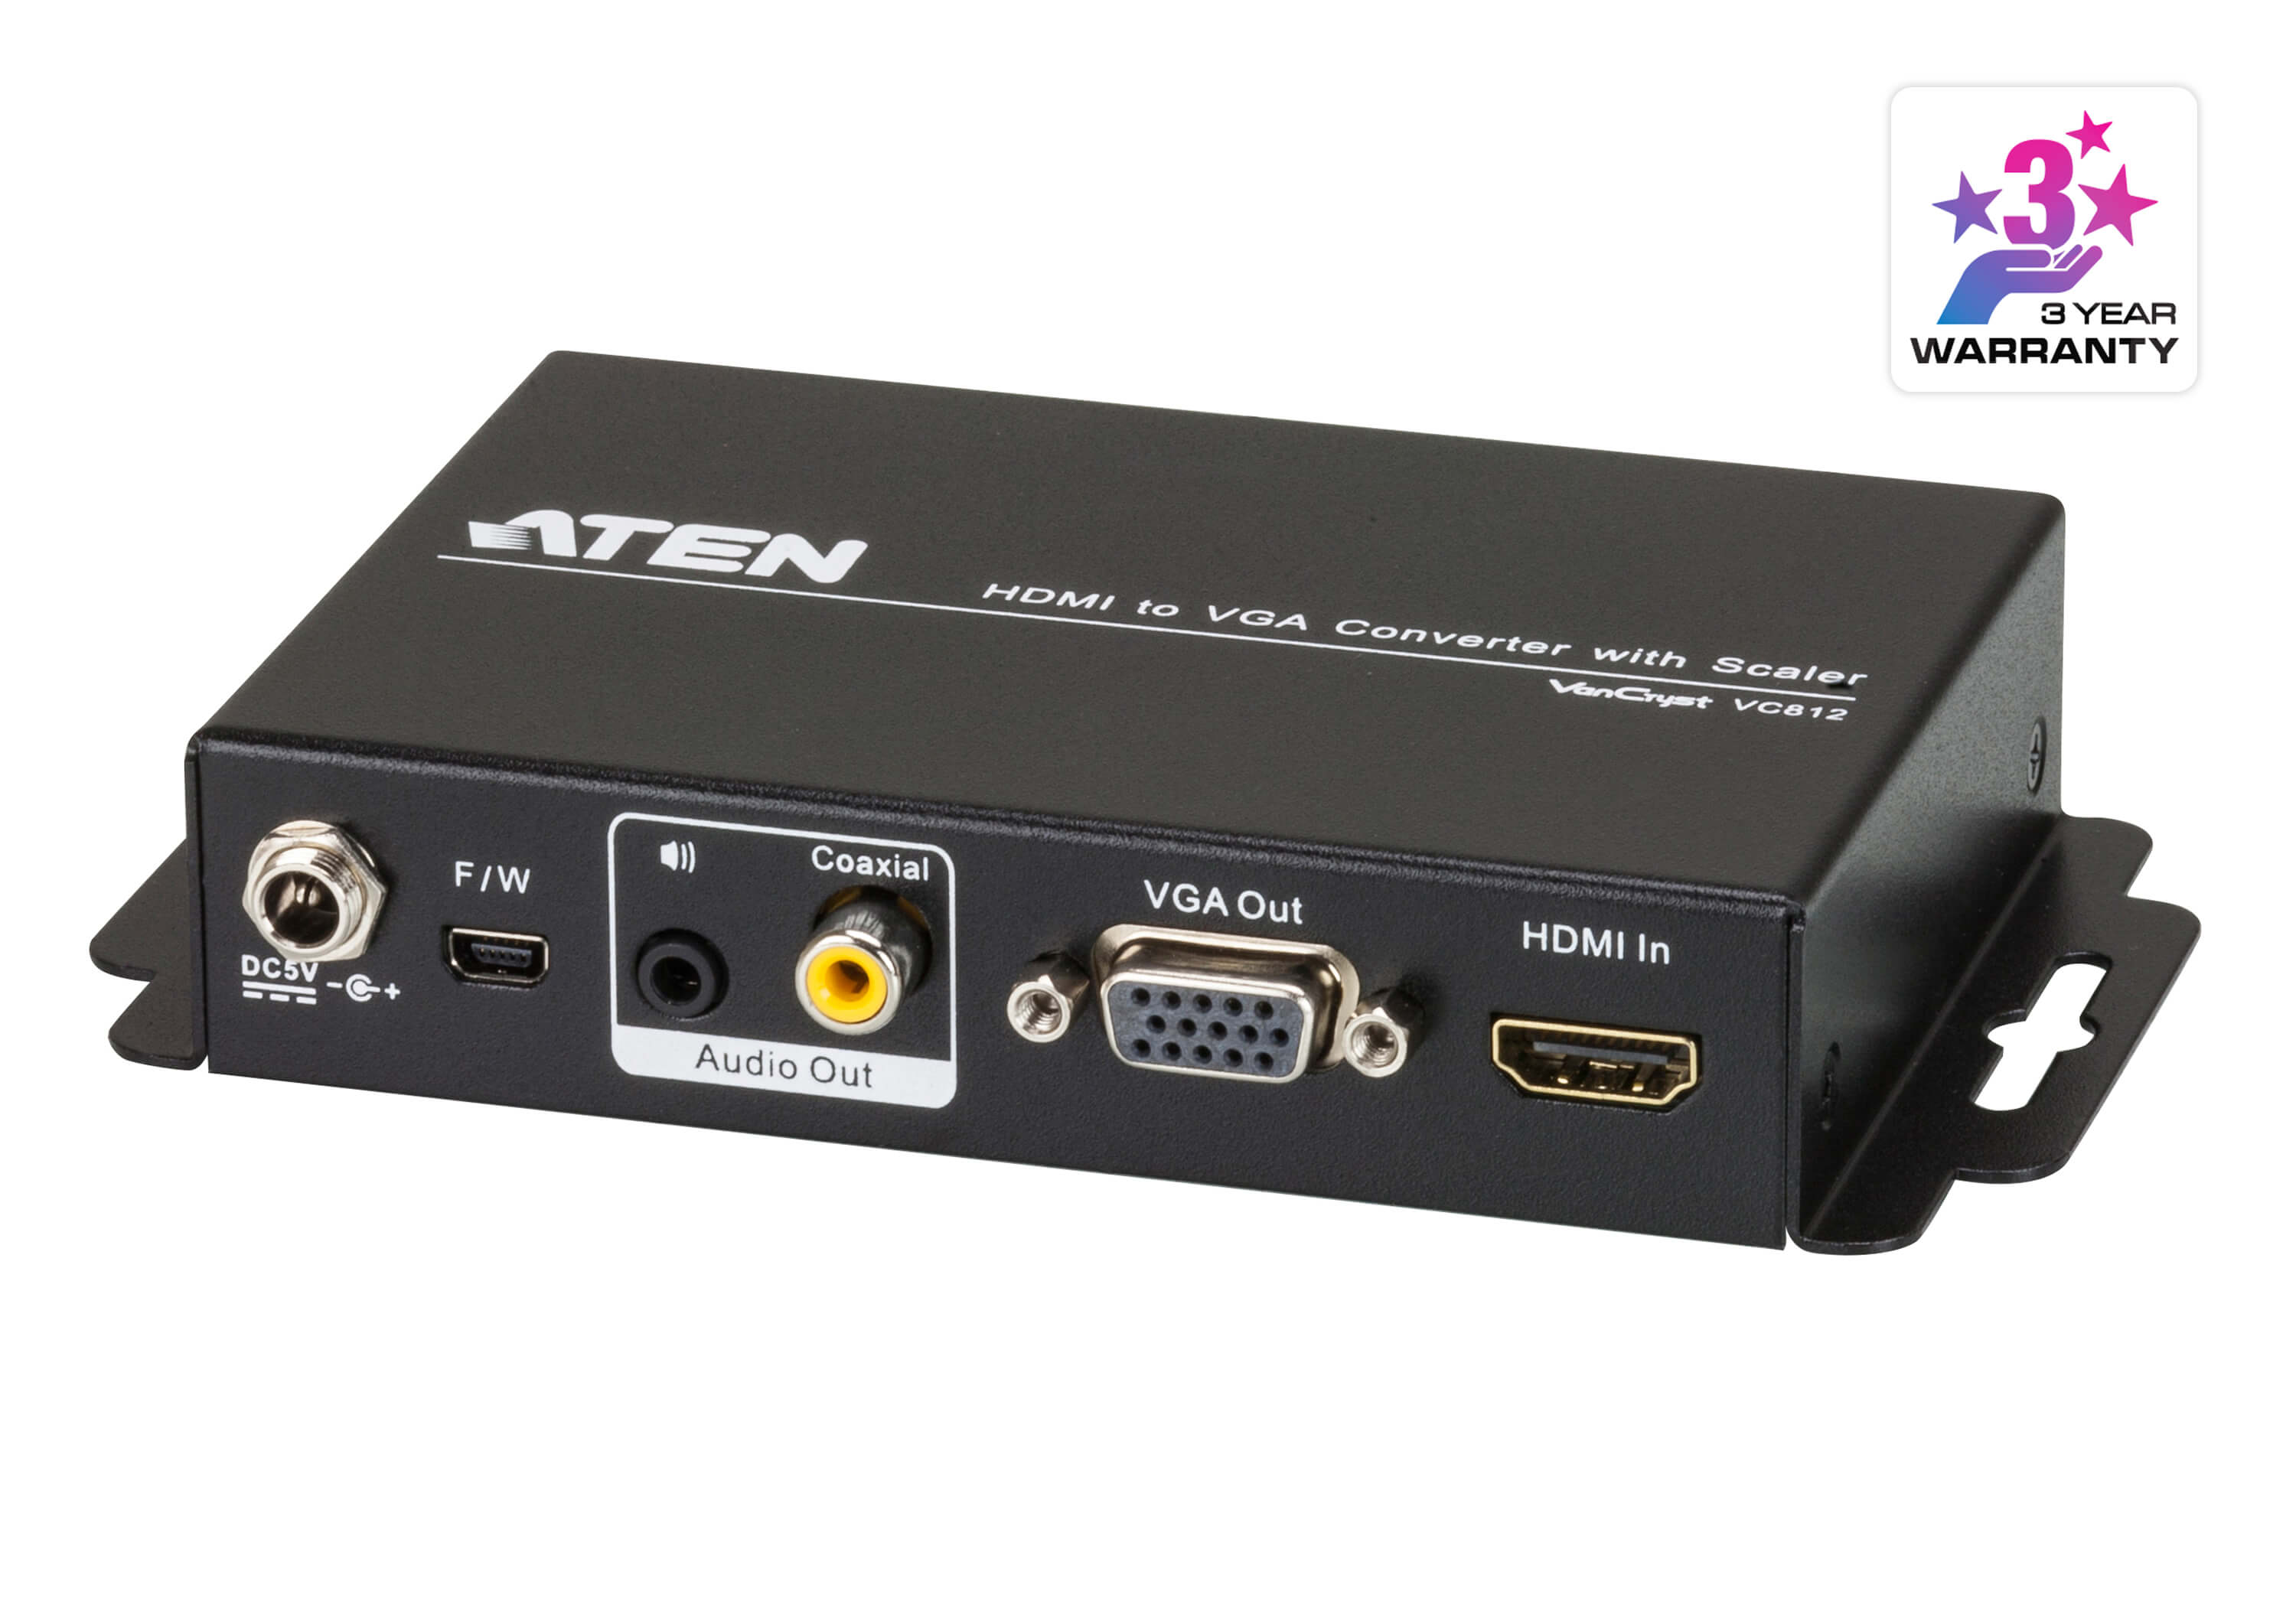 ATEN VC812, Конвертер интерфейса HDMI-VGA с поддержкой звука и масштабирования - фото